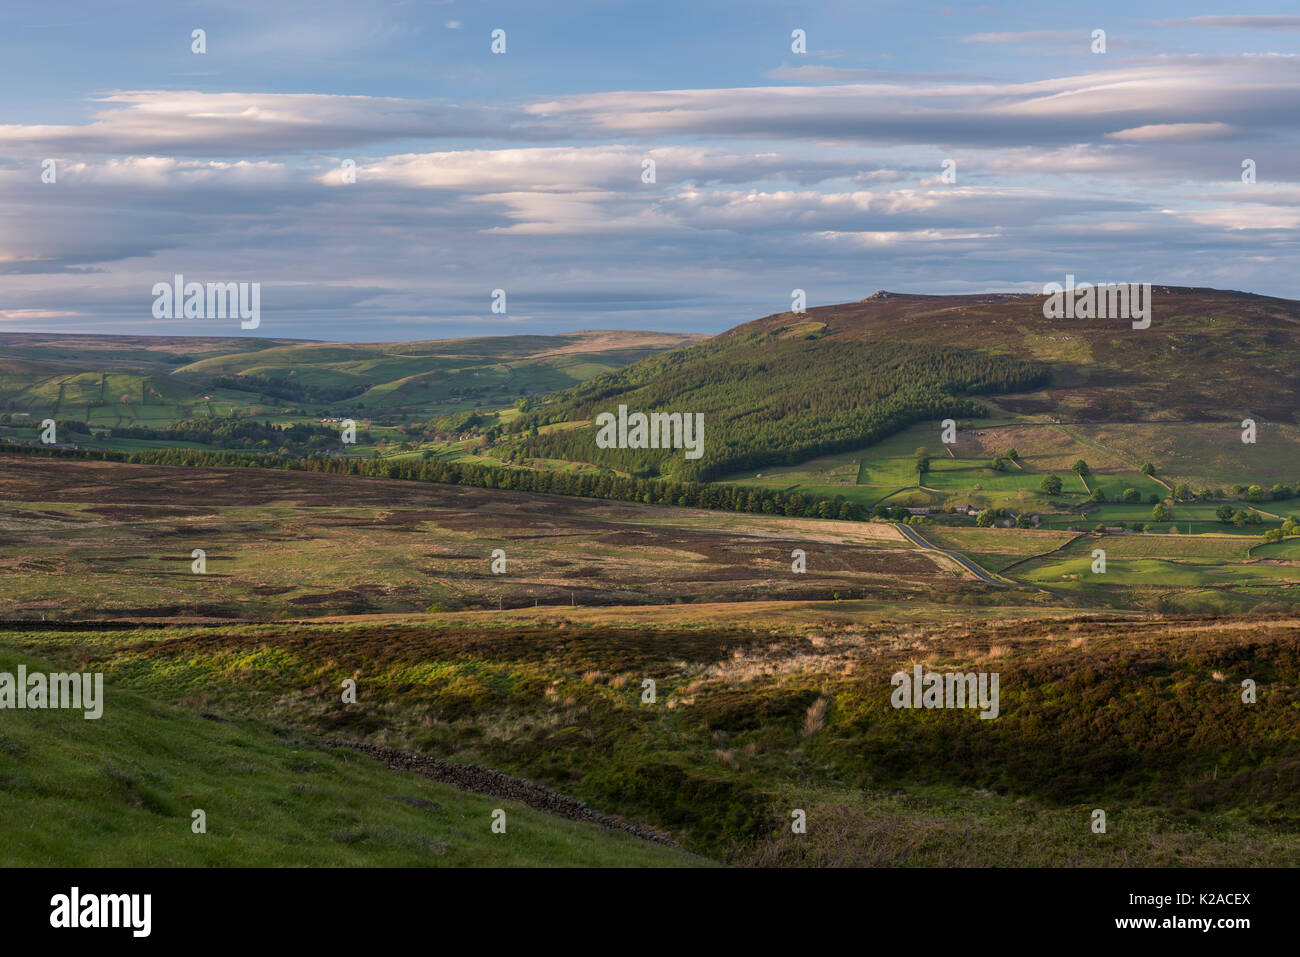 Paesaggio montano panoramico (colline ondulate della valle di Wharfedale, picco di Simon's Seat, luce del sole e ombre sulla terra, cielo blu) - Yorkshire Dales, Inghilterra, Regno Unito Foto Stock